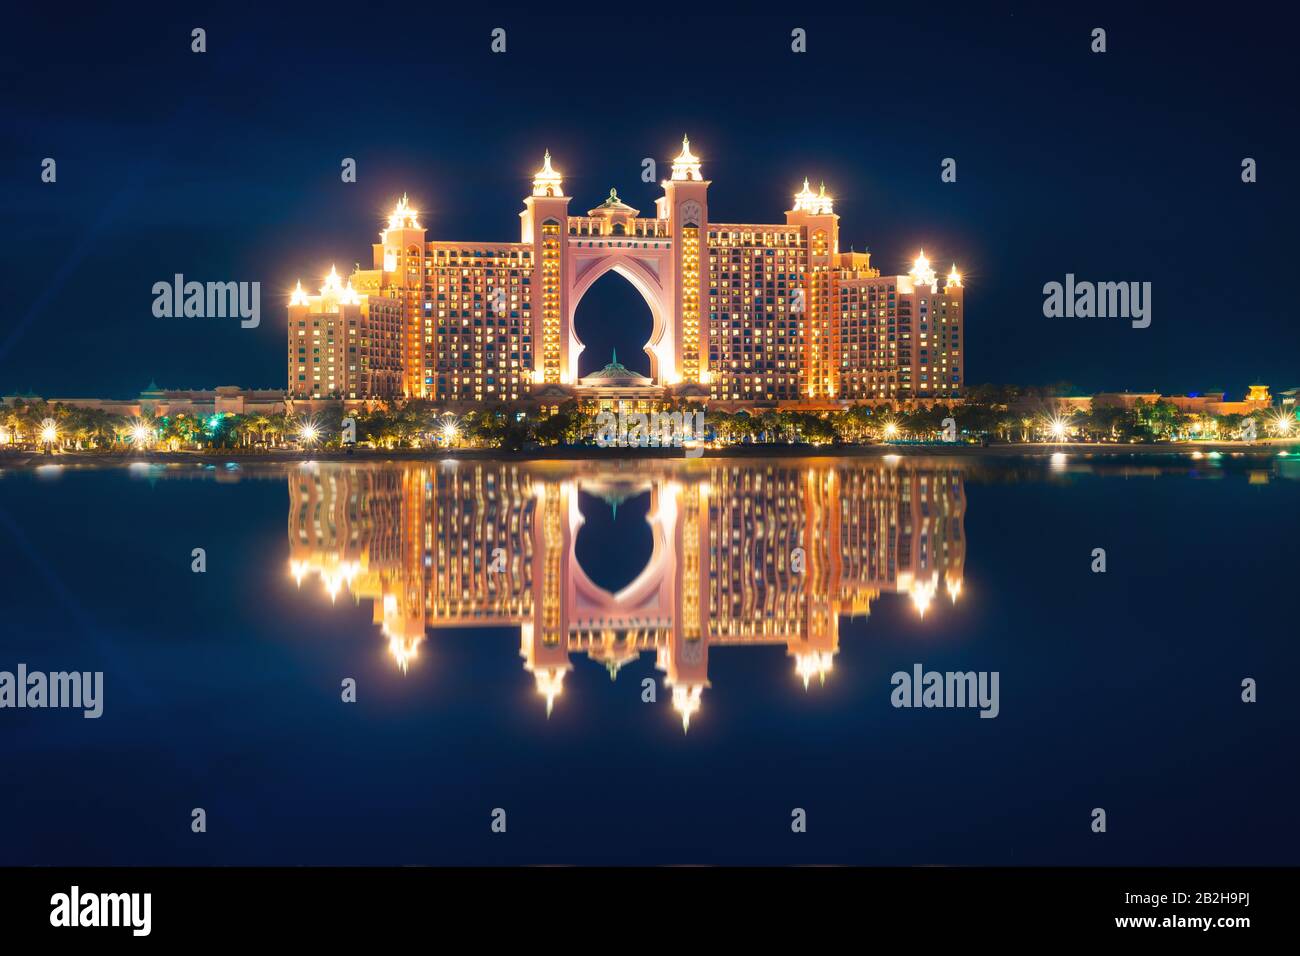 WOW vista di Atlantis Resort, Hotel & Theme Park a Palm Jumeirah Island, una vista dalla Pointe Dubai, Emirati Arabi Uniti. Ispirazione di viaggio di lusso. Foto Stock